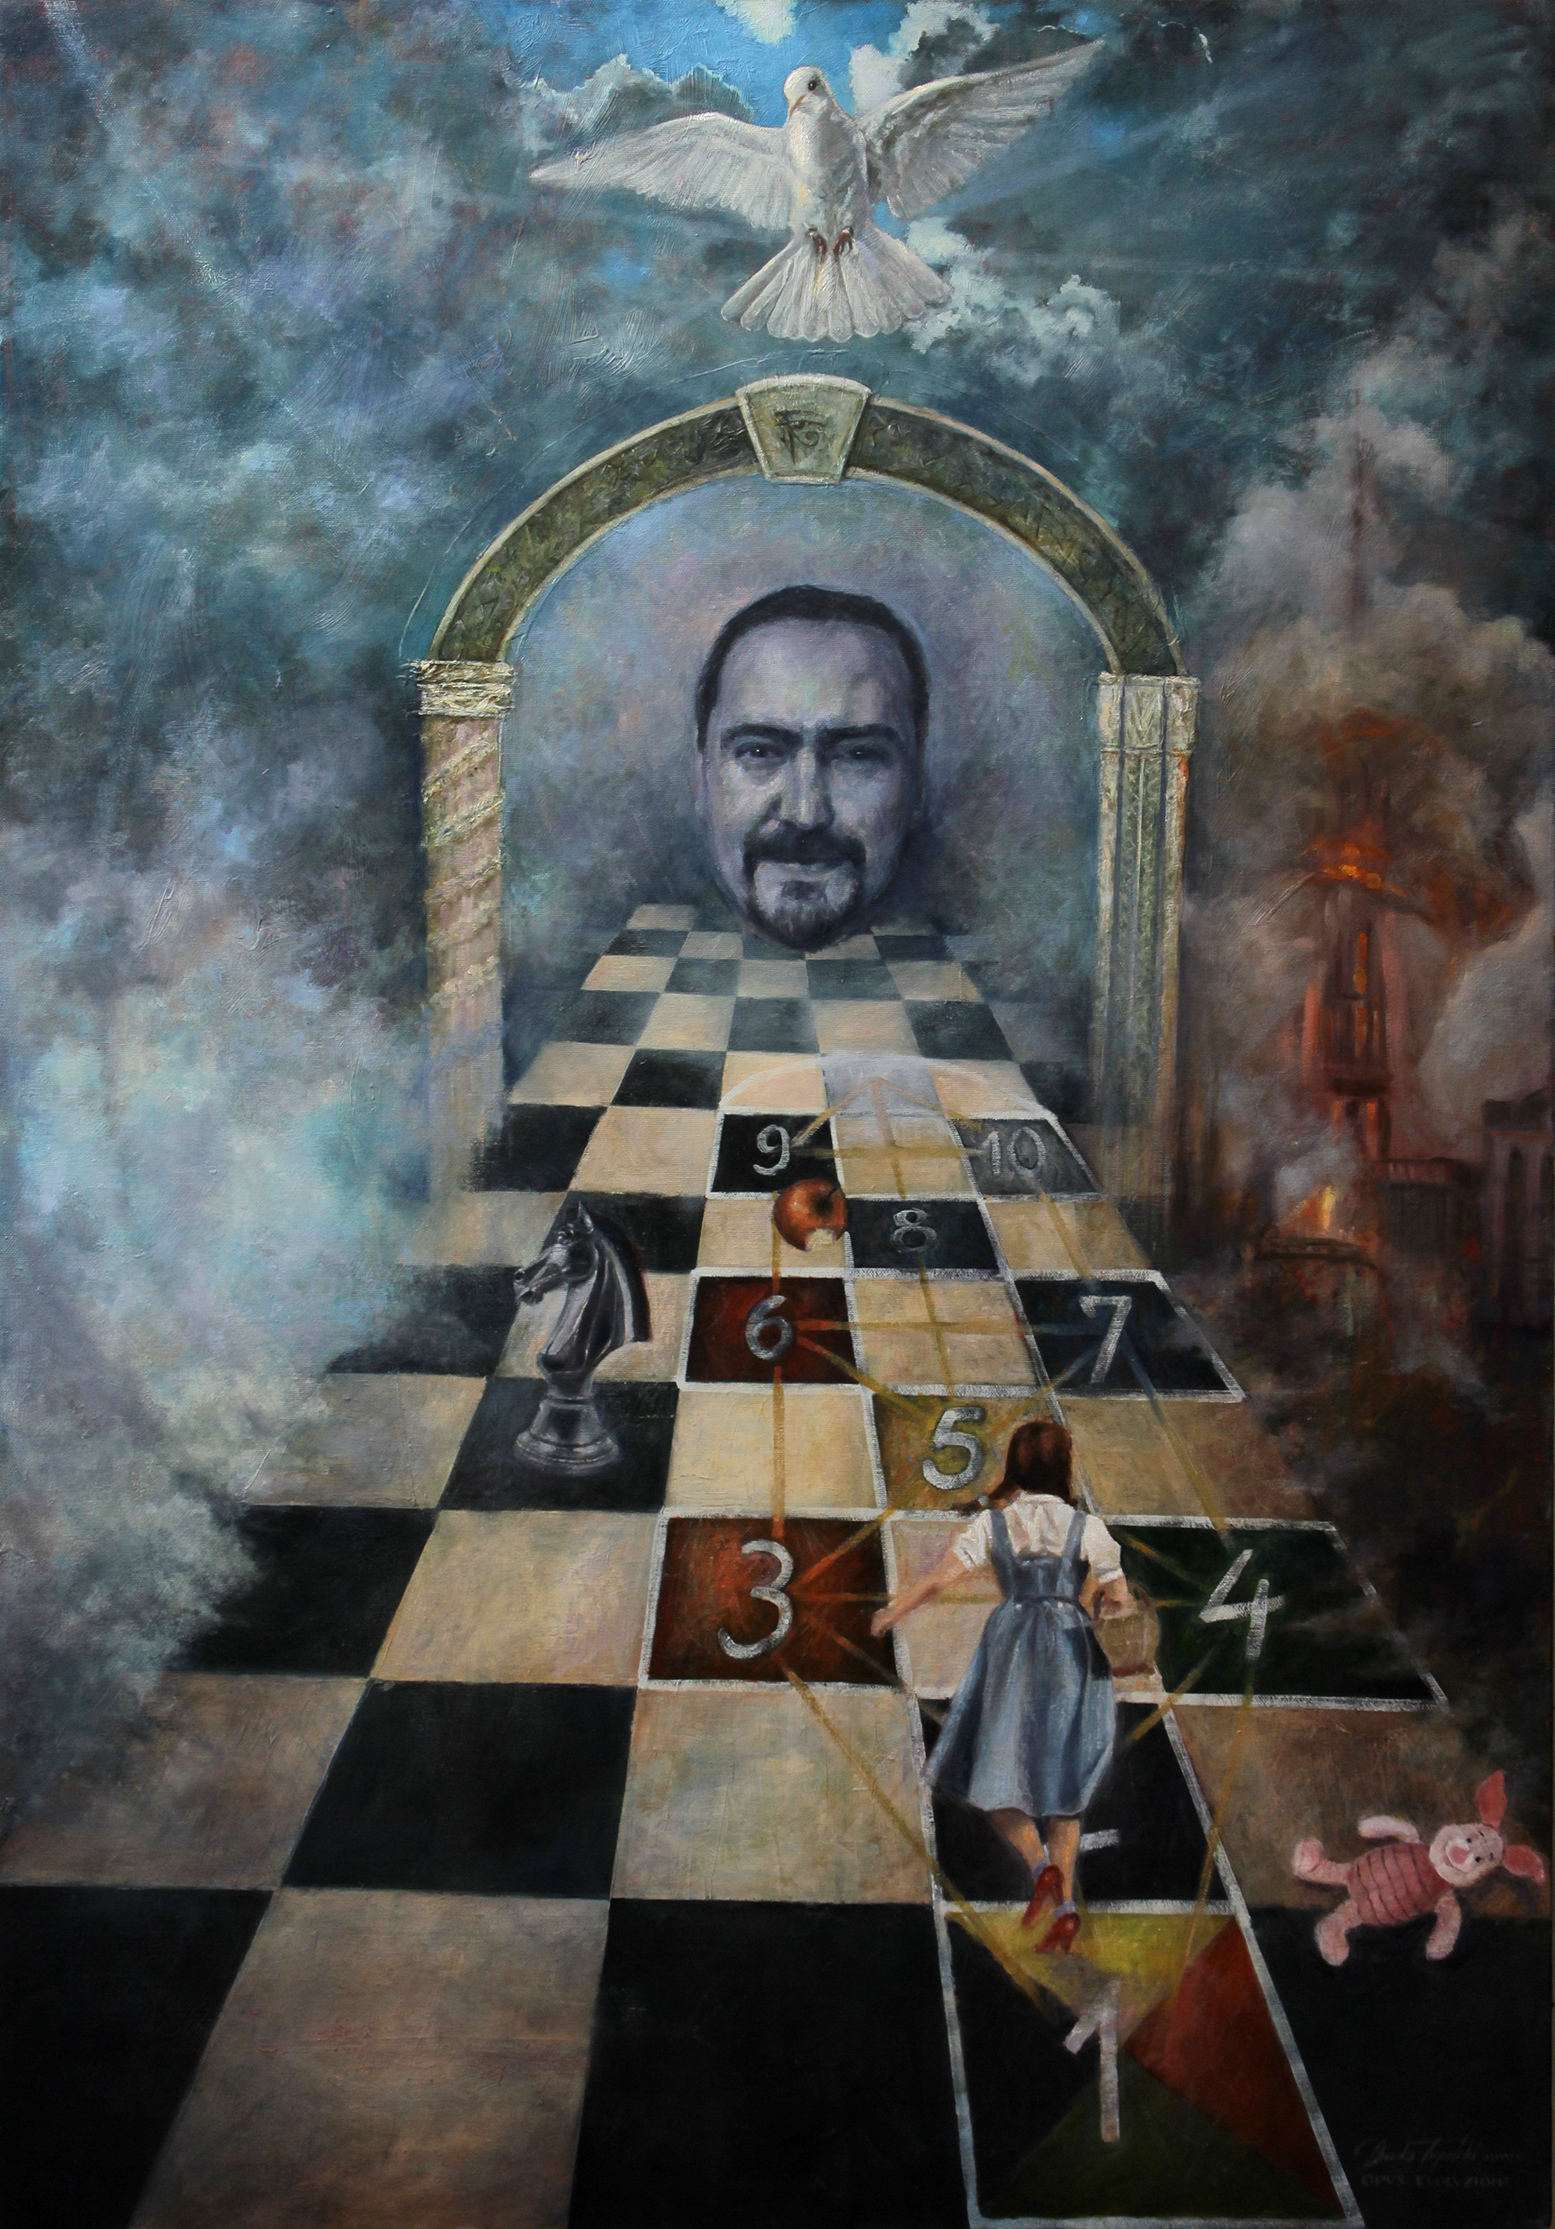 Umetnicka slika - Igra Zivota - ulje na platnu 120x80cm - Umetnik Darko Topalski